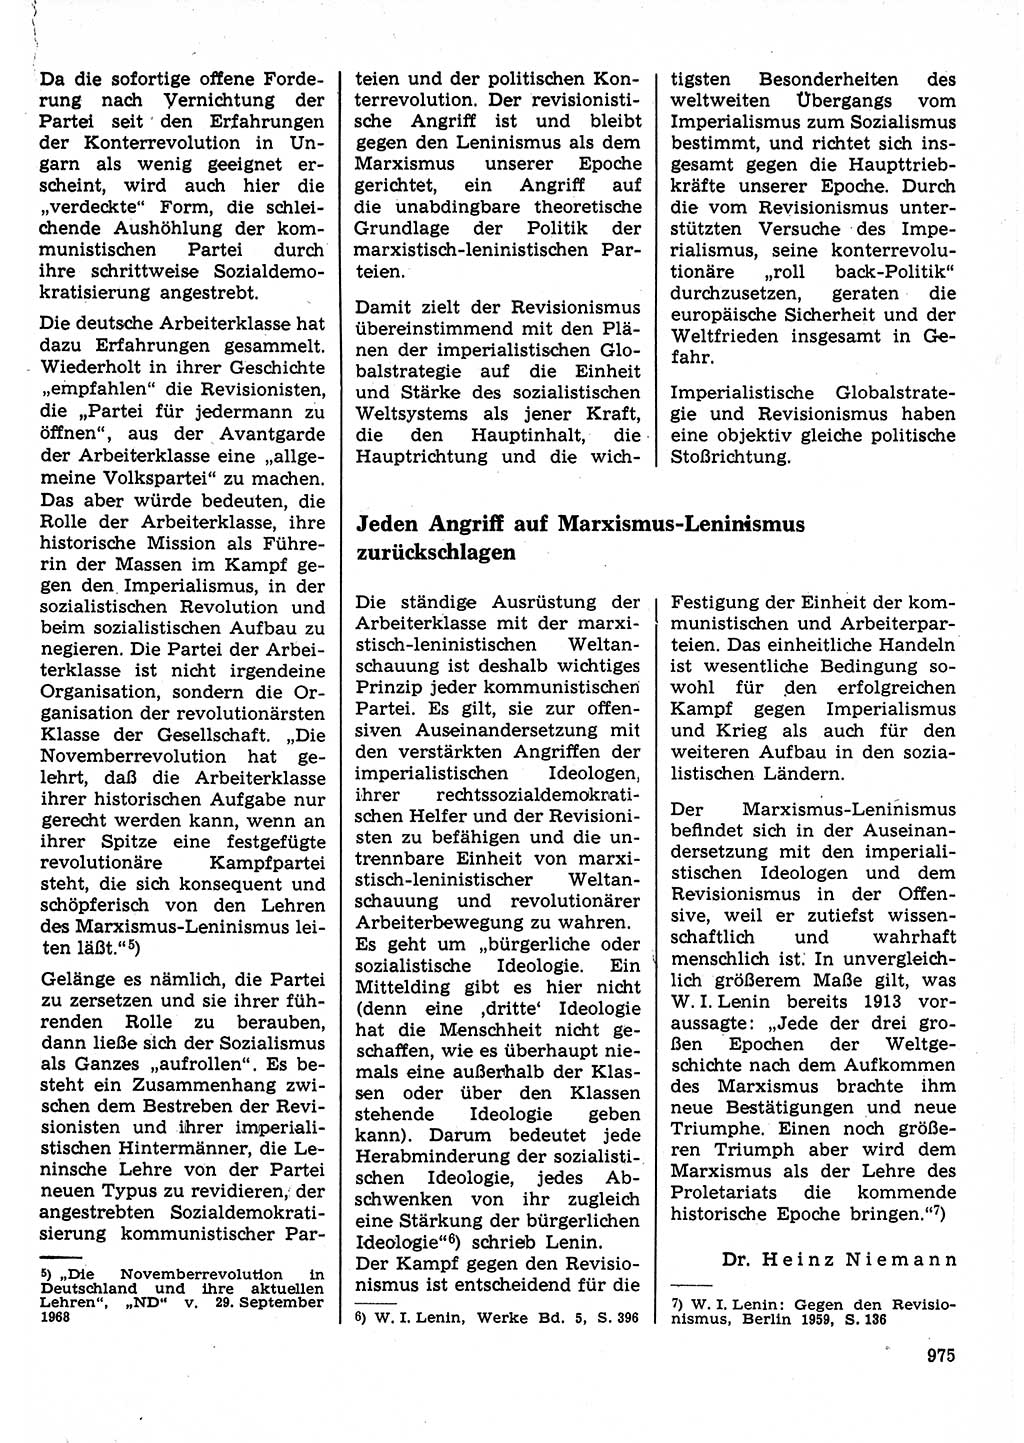 Neuer Weg (NW), Organ des Zentralkomitees (ZK) der SED (Sozialistische Einheitspartei Deutschlands) für Fragen des Parteilebens, 23. Jahrgang [Deutsche Demokratische Republik (DDR)] 1968, Seite 959 (NW ZK SED DDR 1968, S. 959)